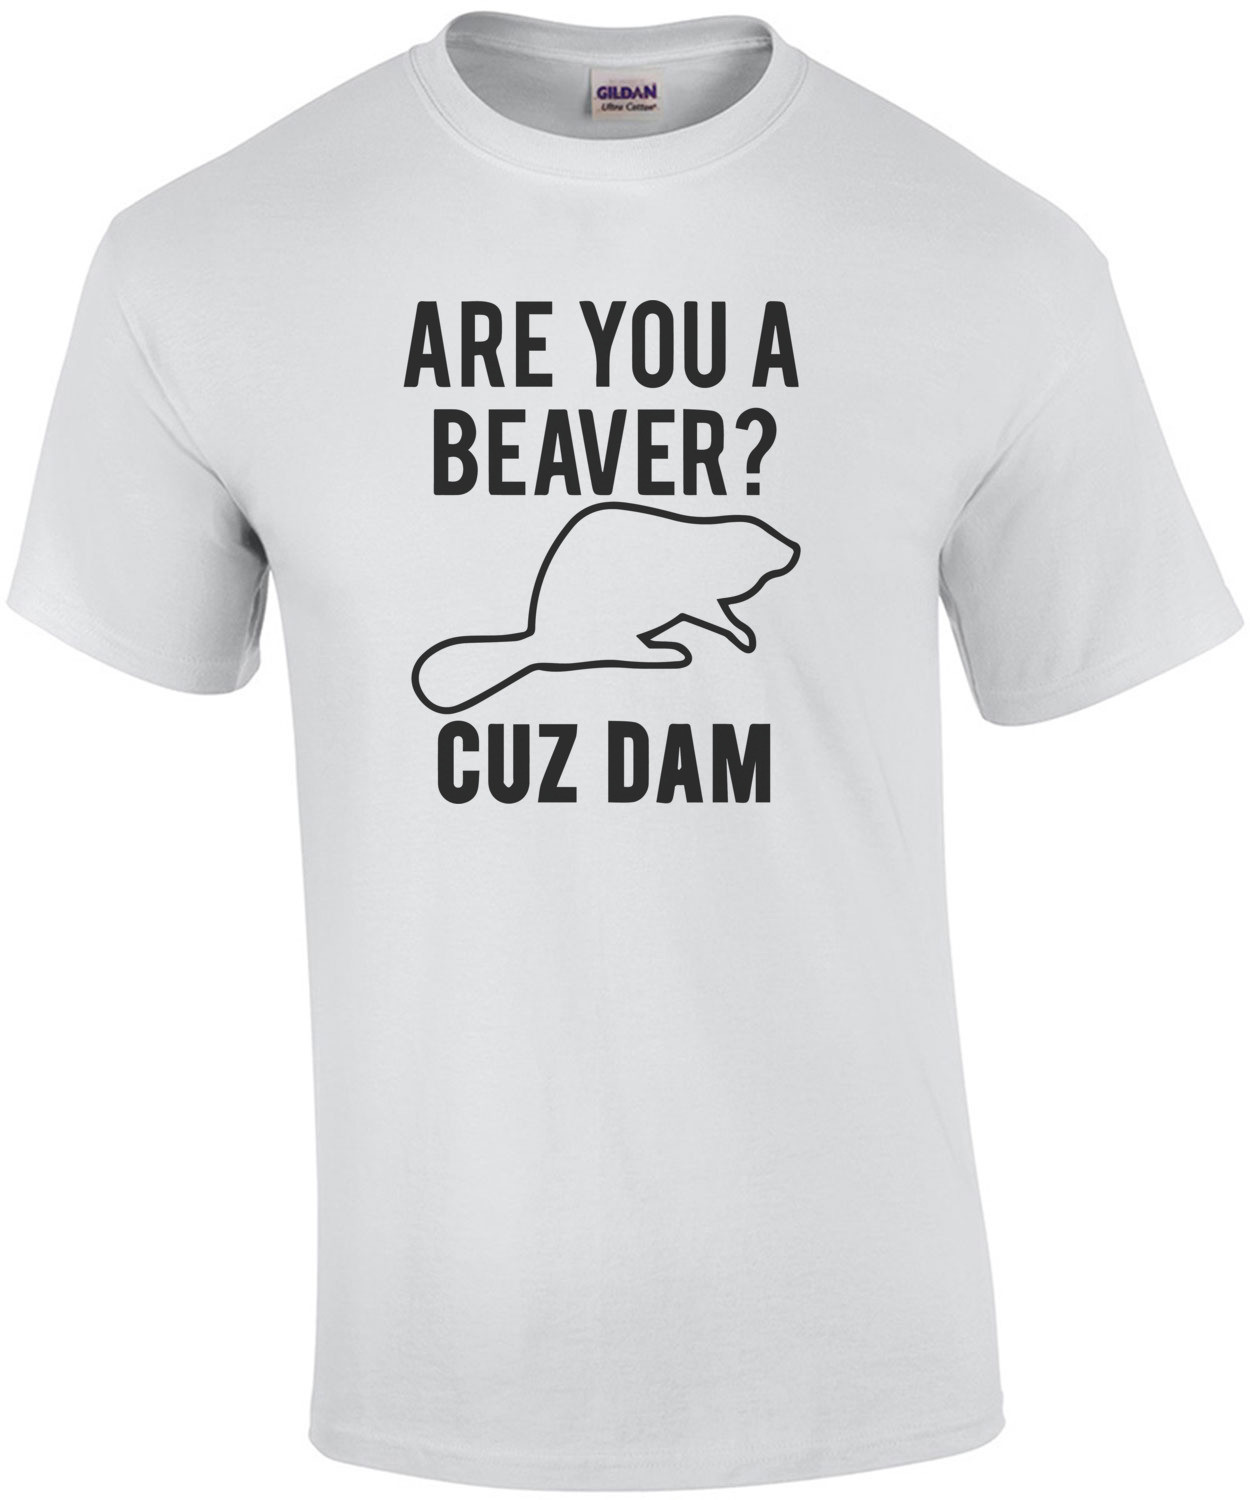 Are you a beaver? Cuz Dam T-Shirt